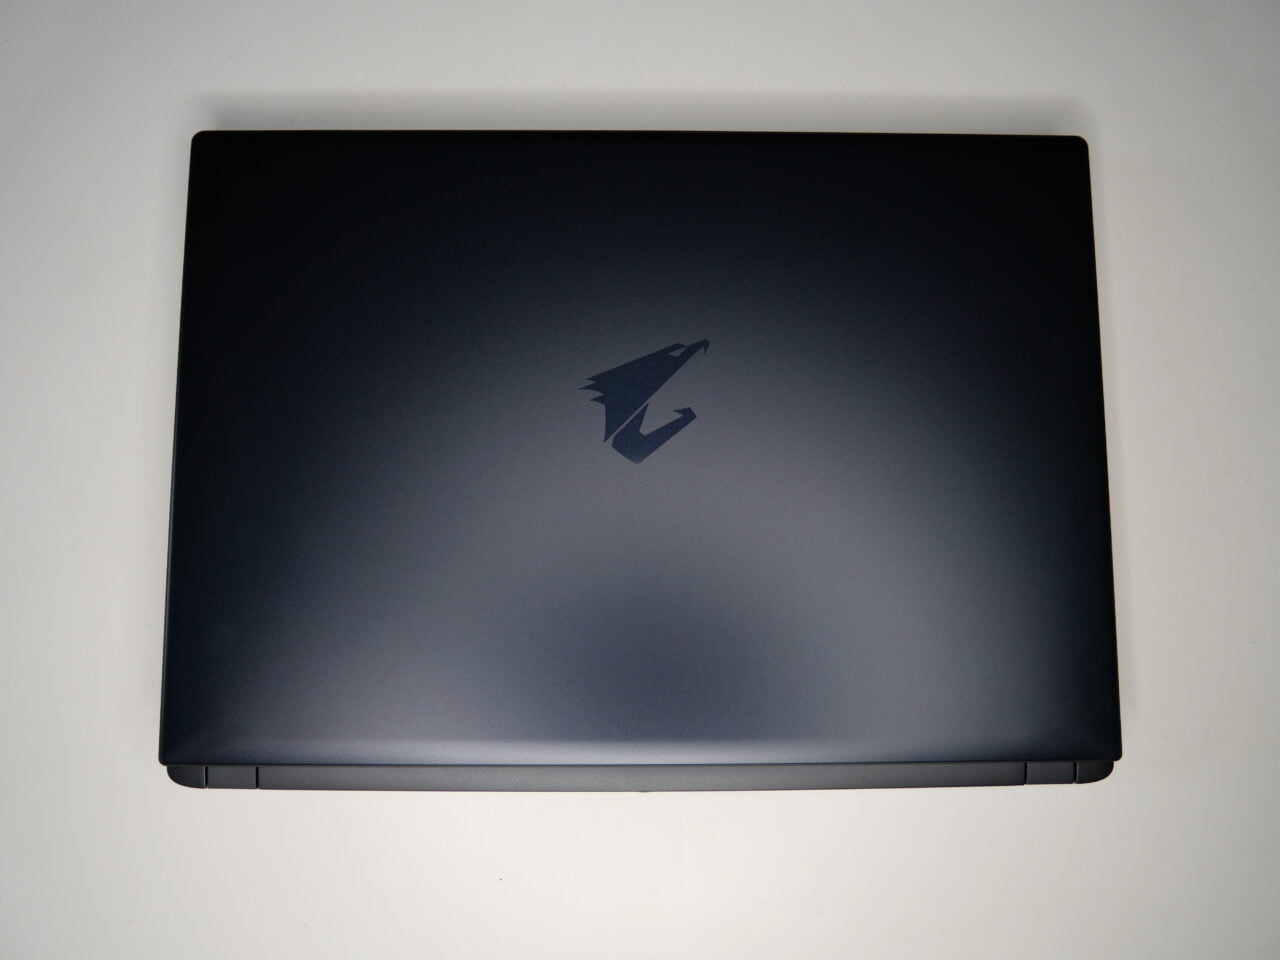 Zamknięty czarny laptop z logo na pokrywie.